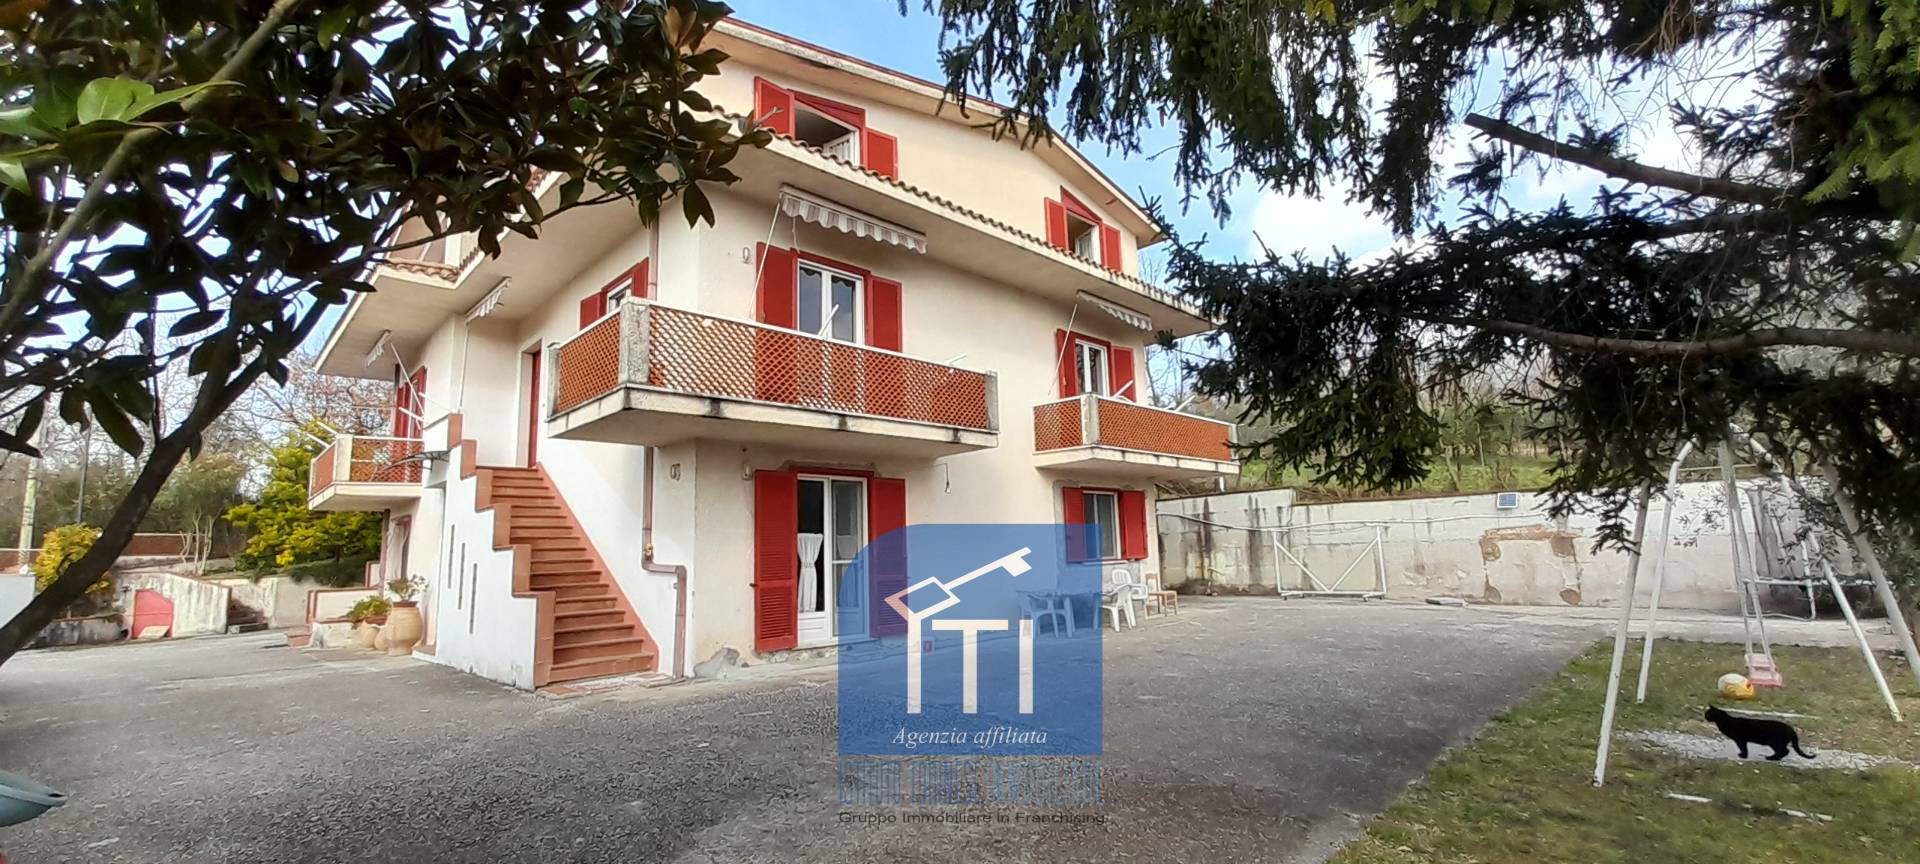 Villa Bifamiliare in vendita a Cervaro, 19 locali, prezzo € 390.000 | PortaleAgenzieImmobiliari.it